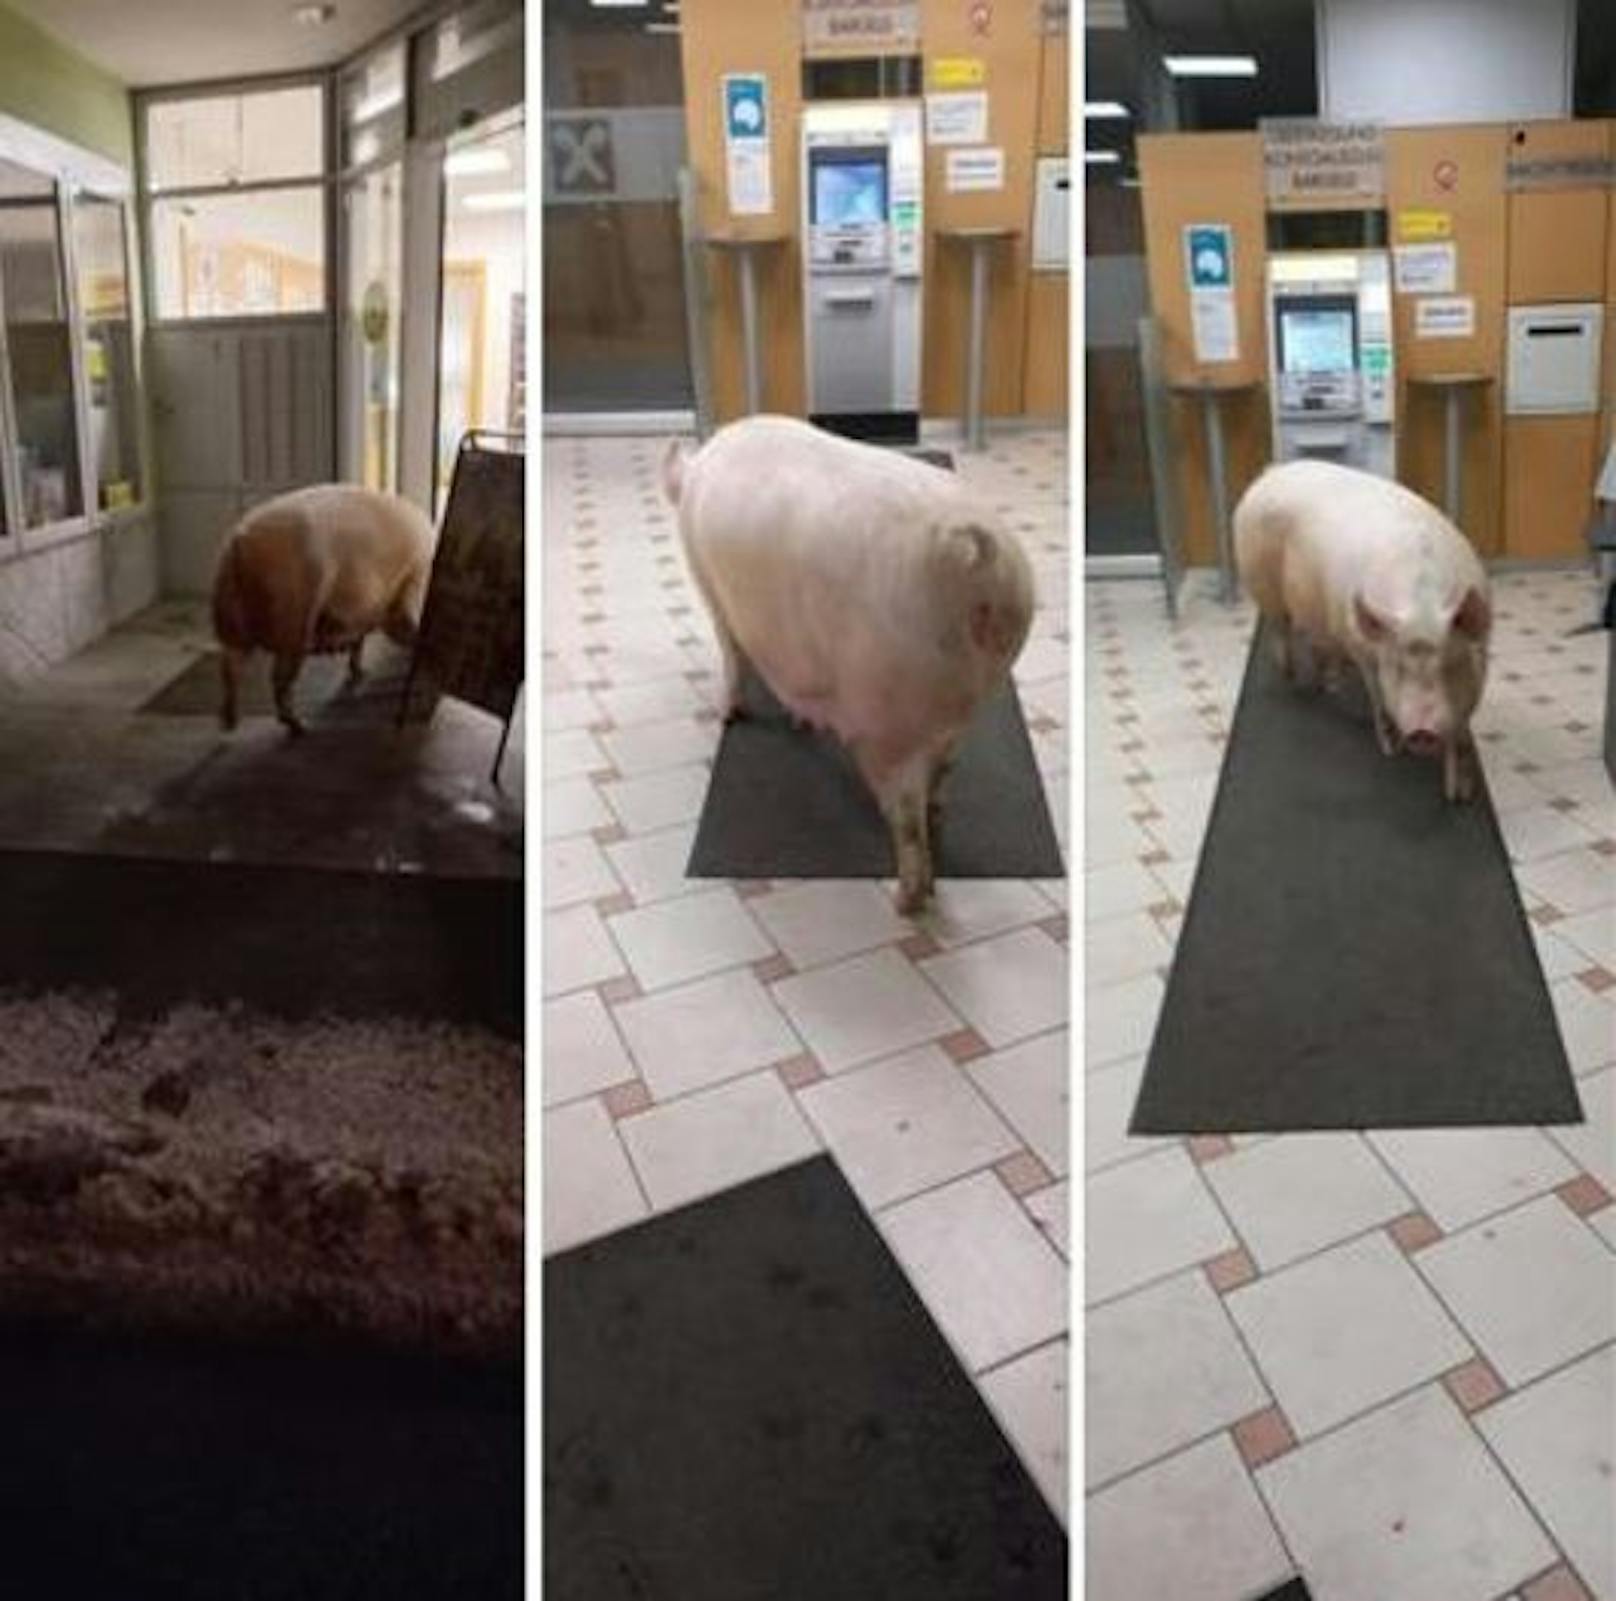 Schwein schlenderte durch Bankfiliale.